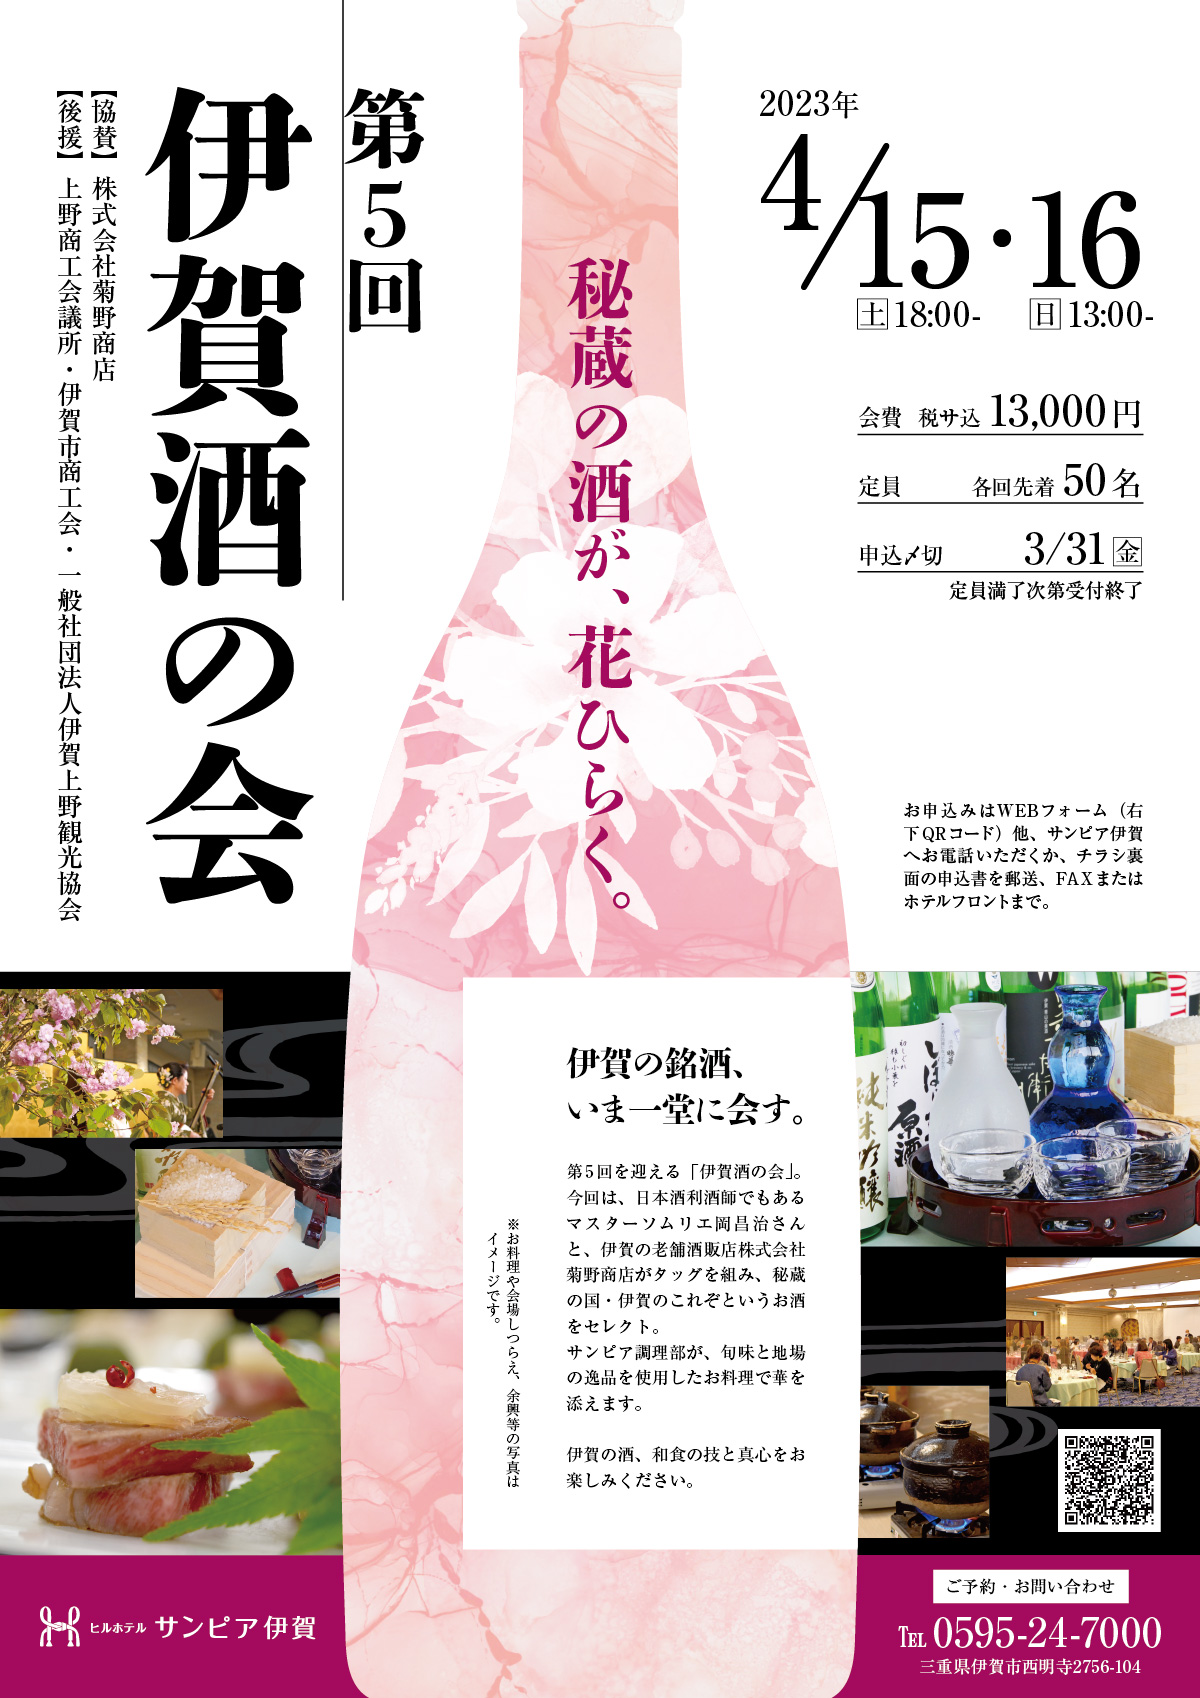 第5回伊賀酒の会は、2023年4月15日と16日開催。会費は13,000円。「秘蔵の酒が、花ひらく」というテーマで、伊賀の酒蔵のこれぞというお酒をセレクトしてご紹介します。サンピア伊賀のお料理とともにお楽しみください。